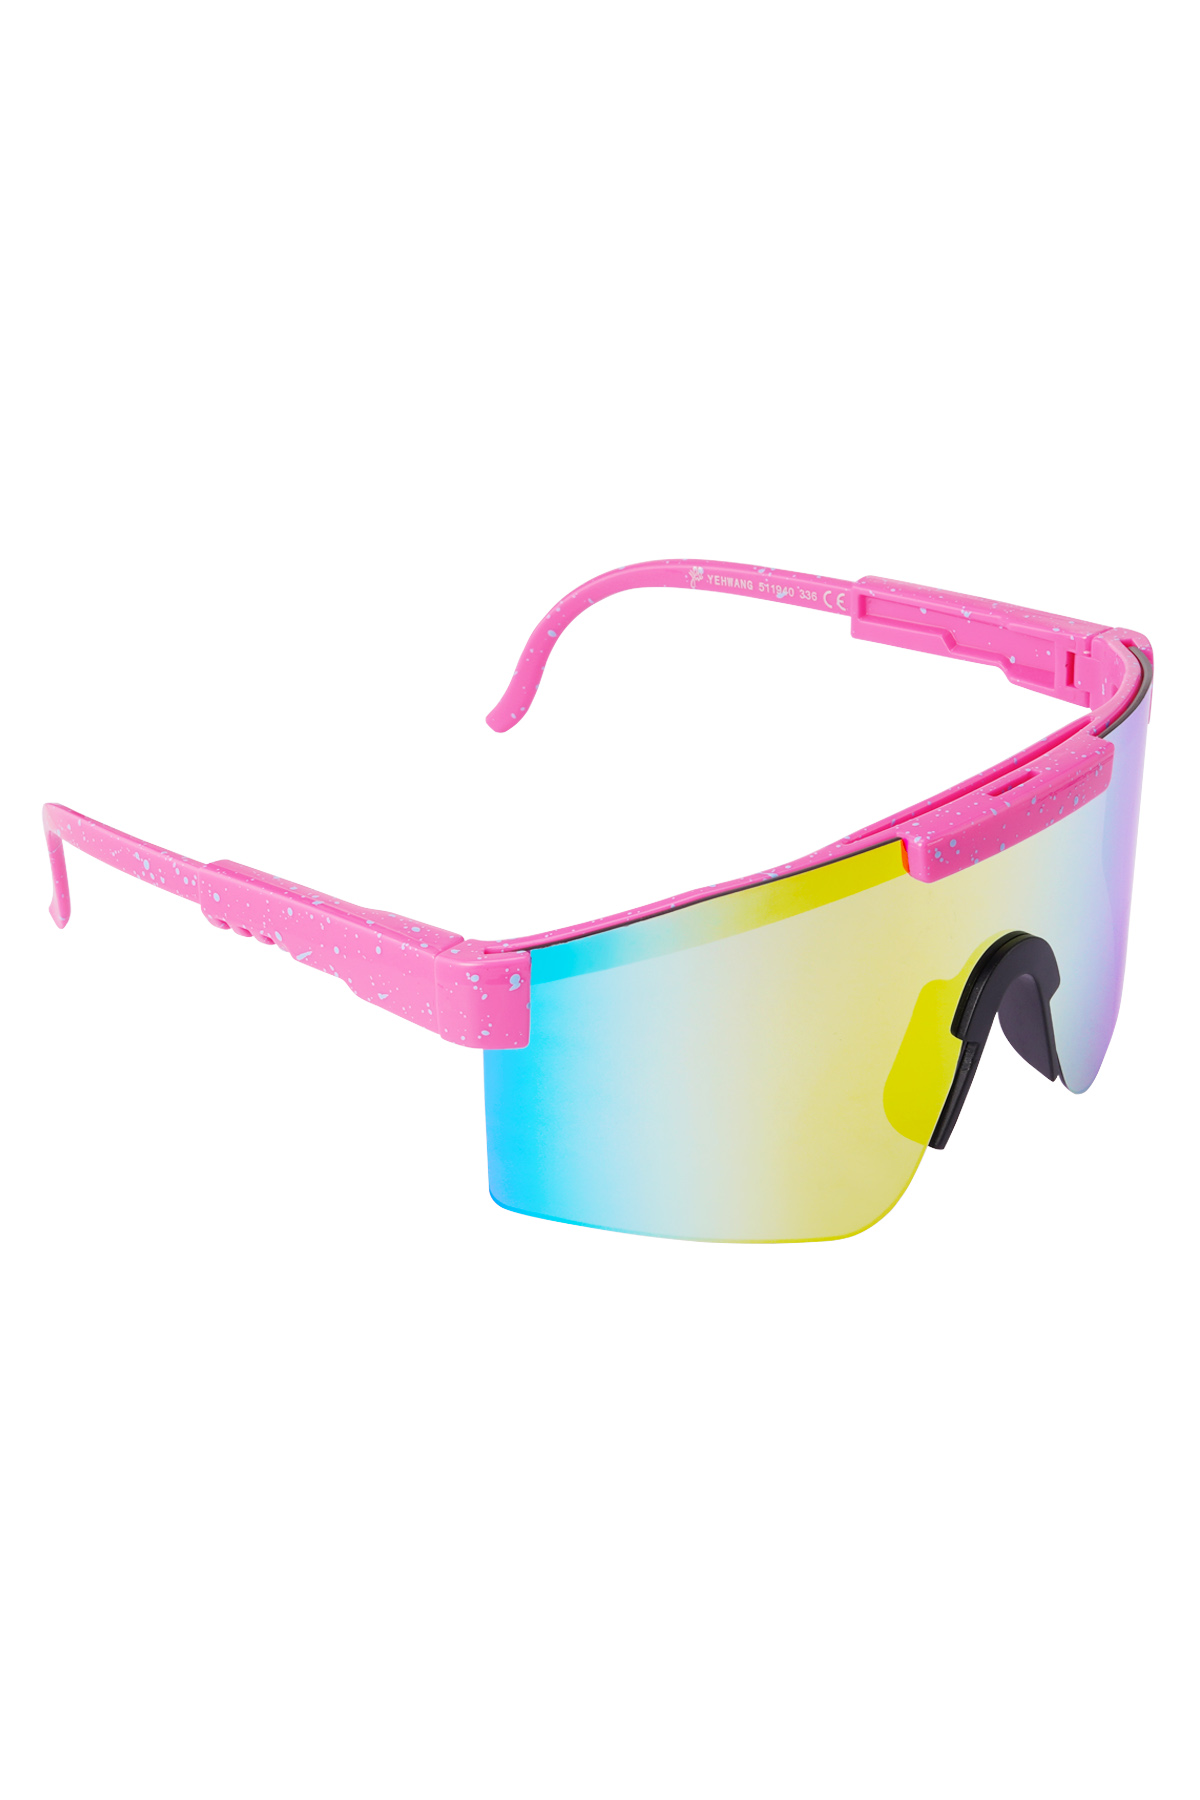 Gafas de sol con lentes de colores estampados - rosa h5 